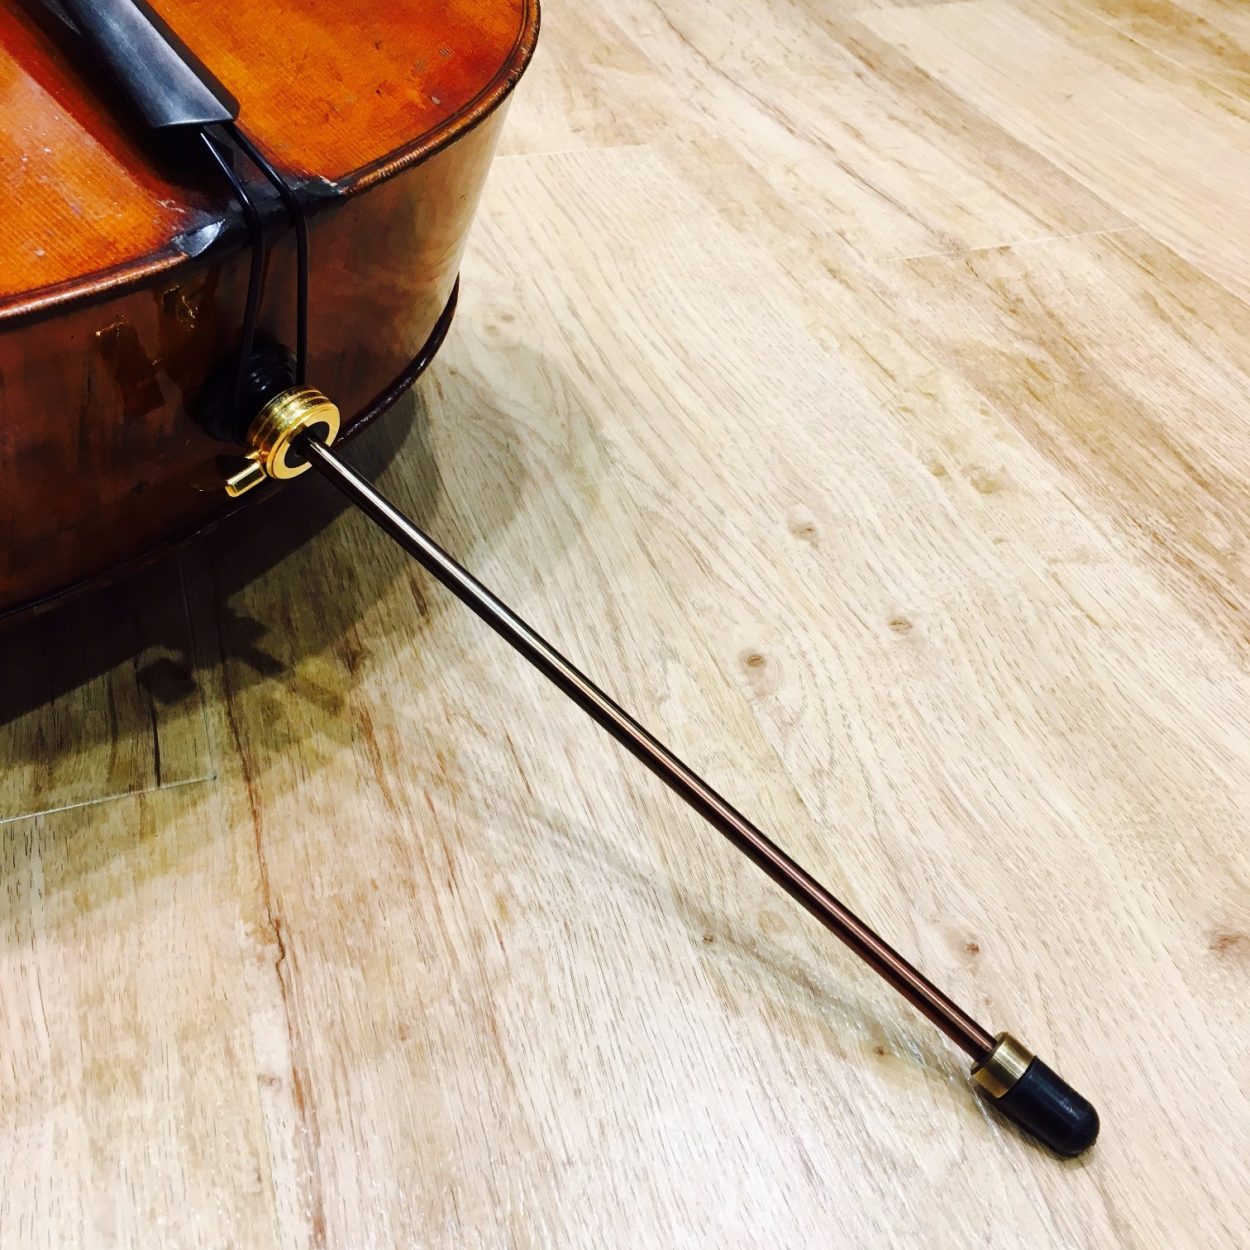 チェロエンドピン～Alfe Endpin Antique～ - 名古屋の弦楽器専門店 KAEDE STRINGS | バイオリン・ビオラ・チェロ ・弓の販売